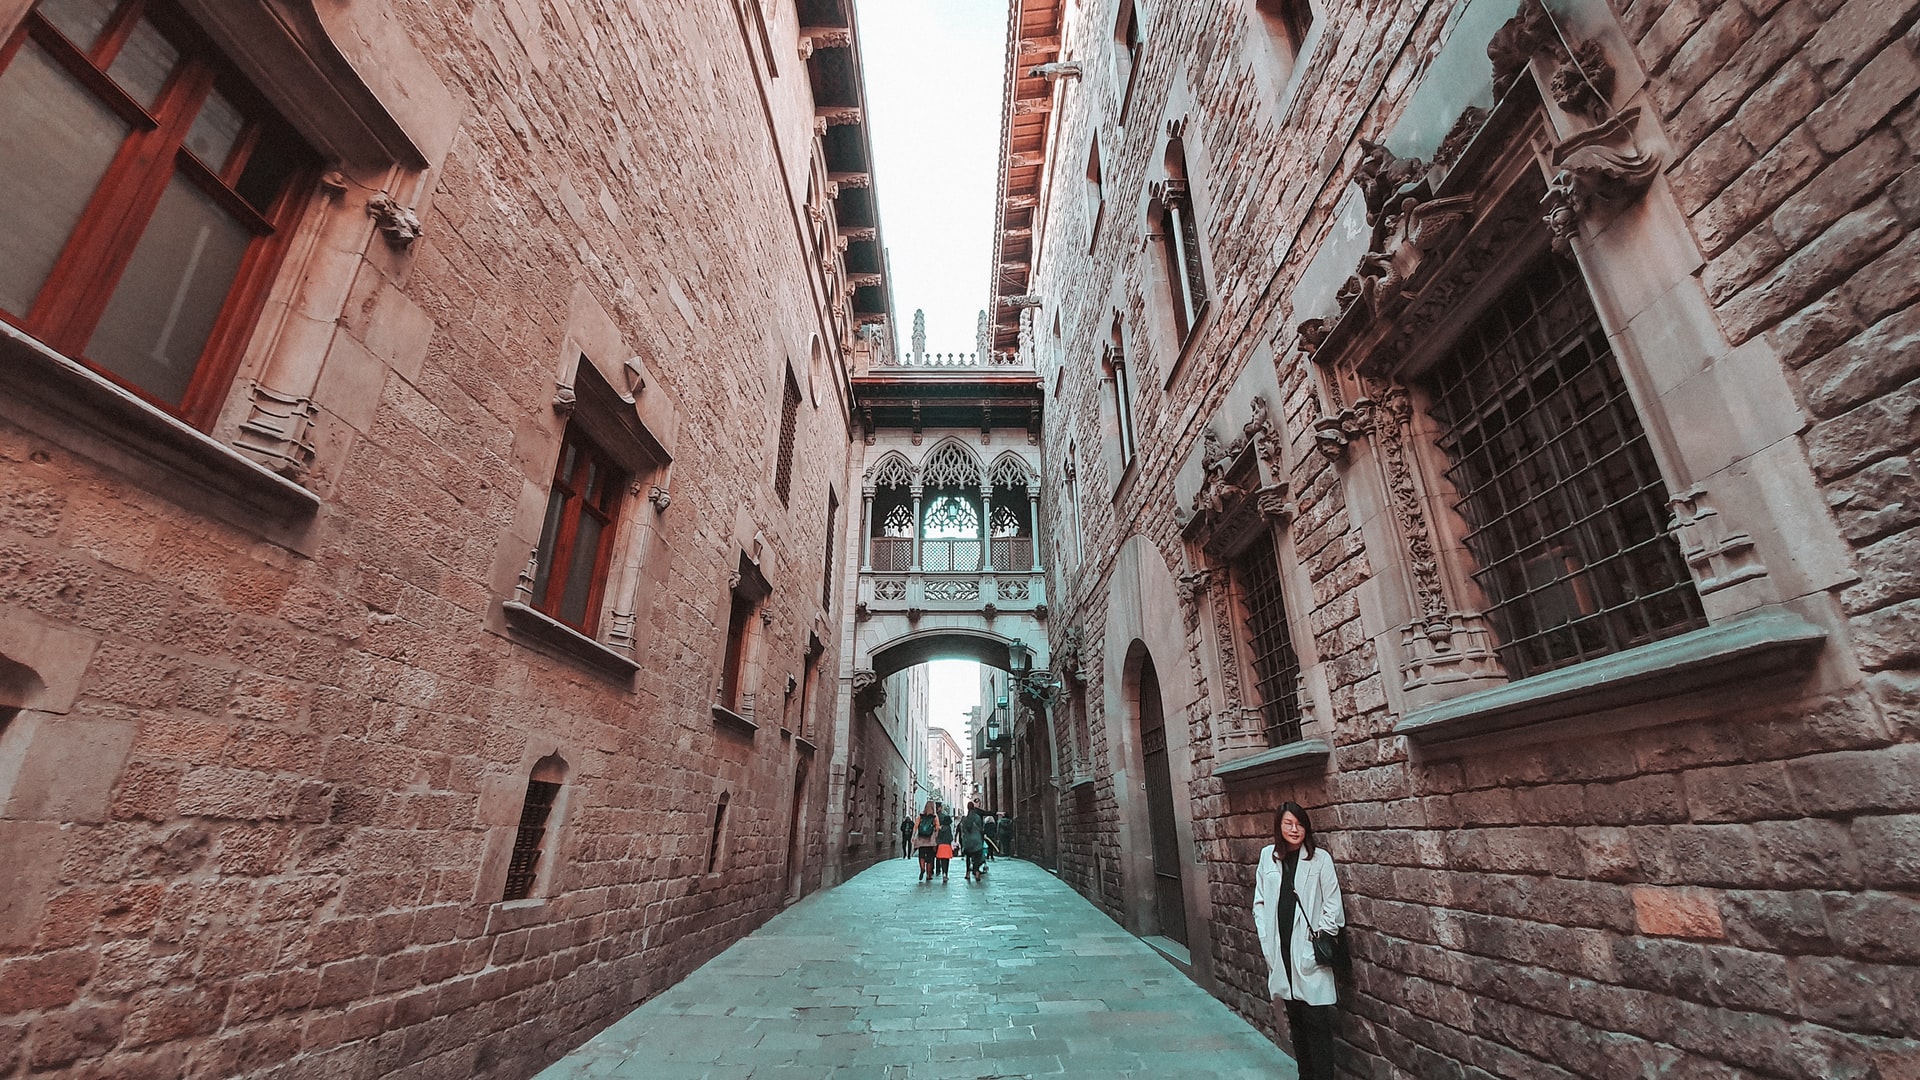 Famoso por su encanto medieval, el Barrio Gótico de Barcelona alberga algunas de las atracciones históricas más impresionantes de la capital catalana.